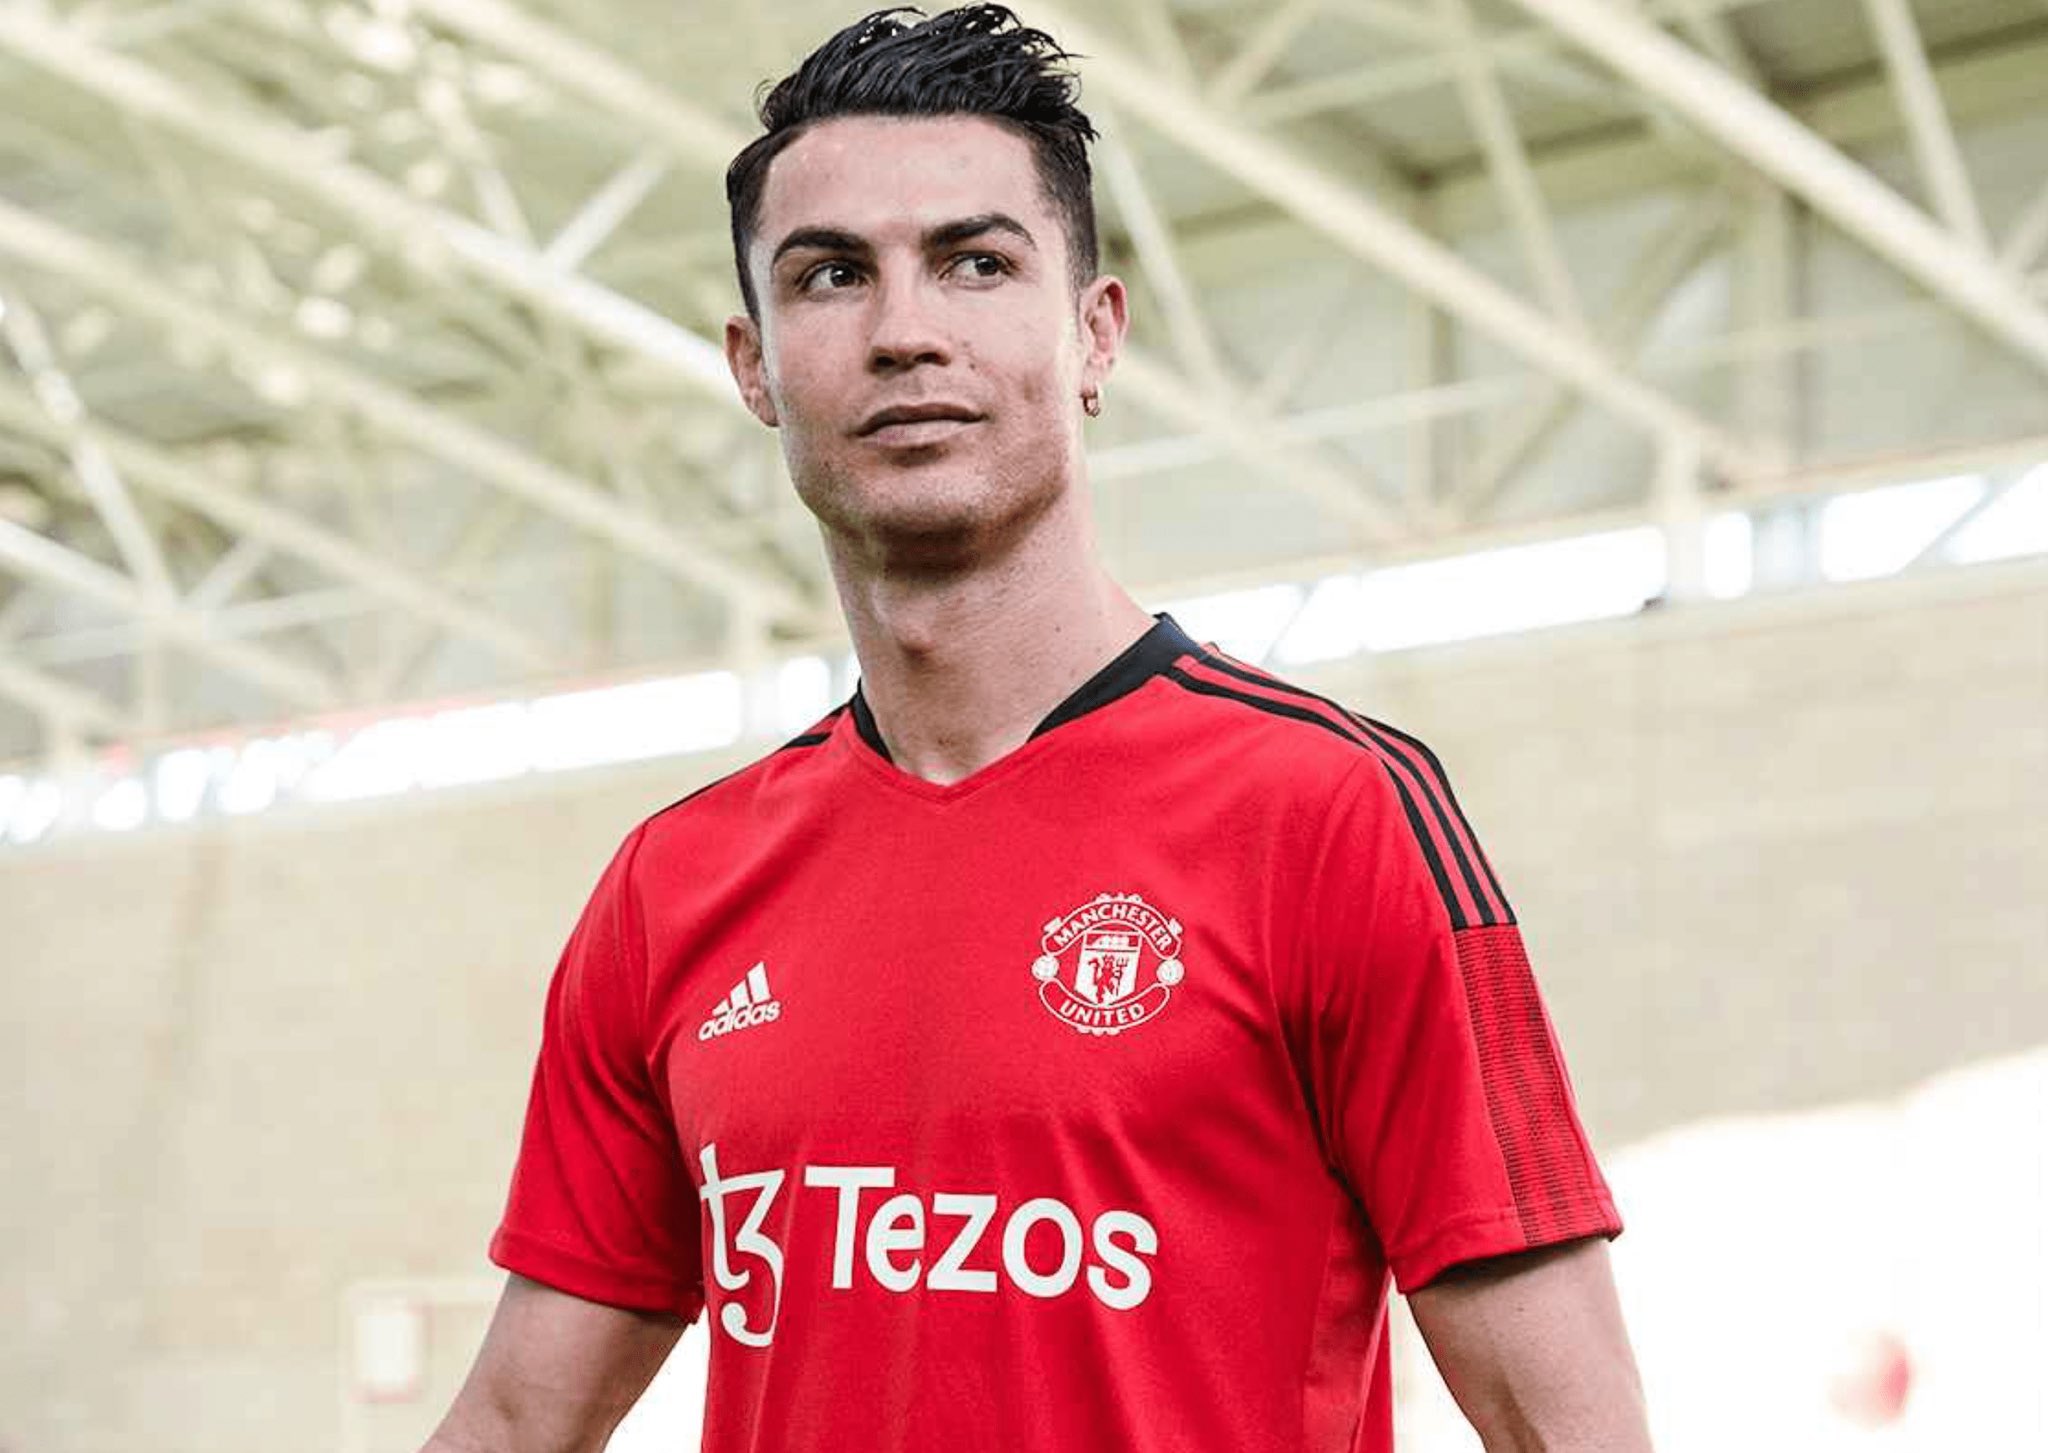 تويتر \ Blue على تويتر: "Cristiano Ronaldo con nueva camiseta del United, con la publicidad #Tezos #CR7 https://t.co/XzzxUo1oOU"